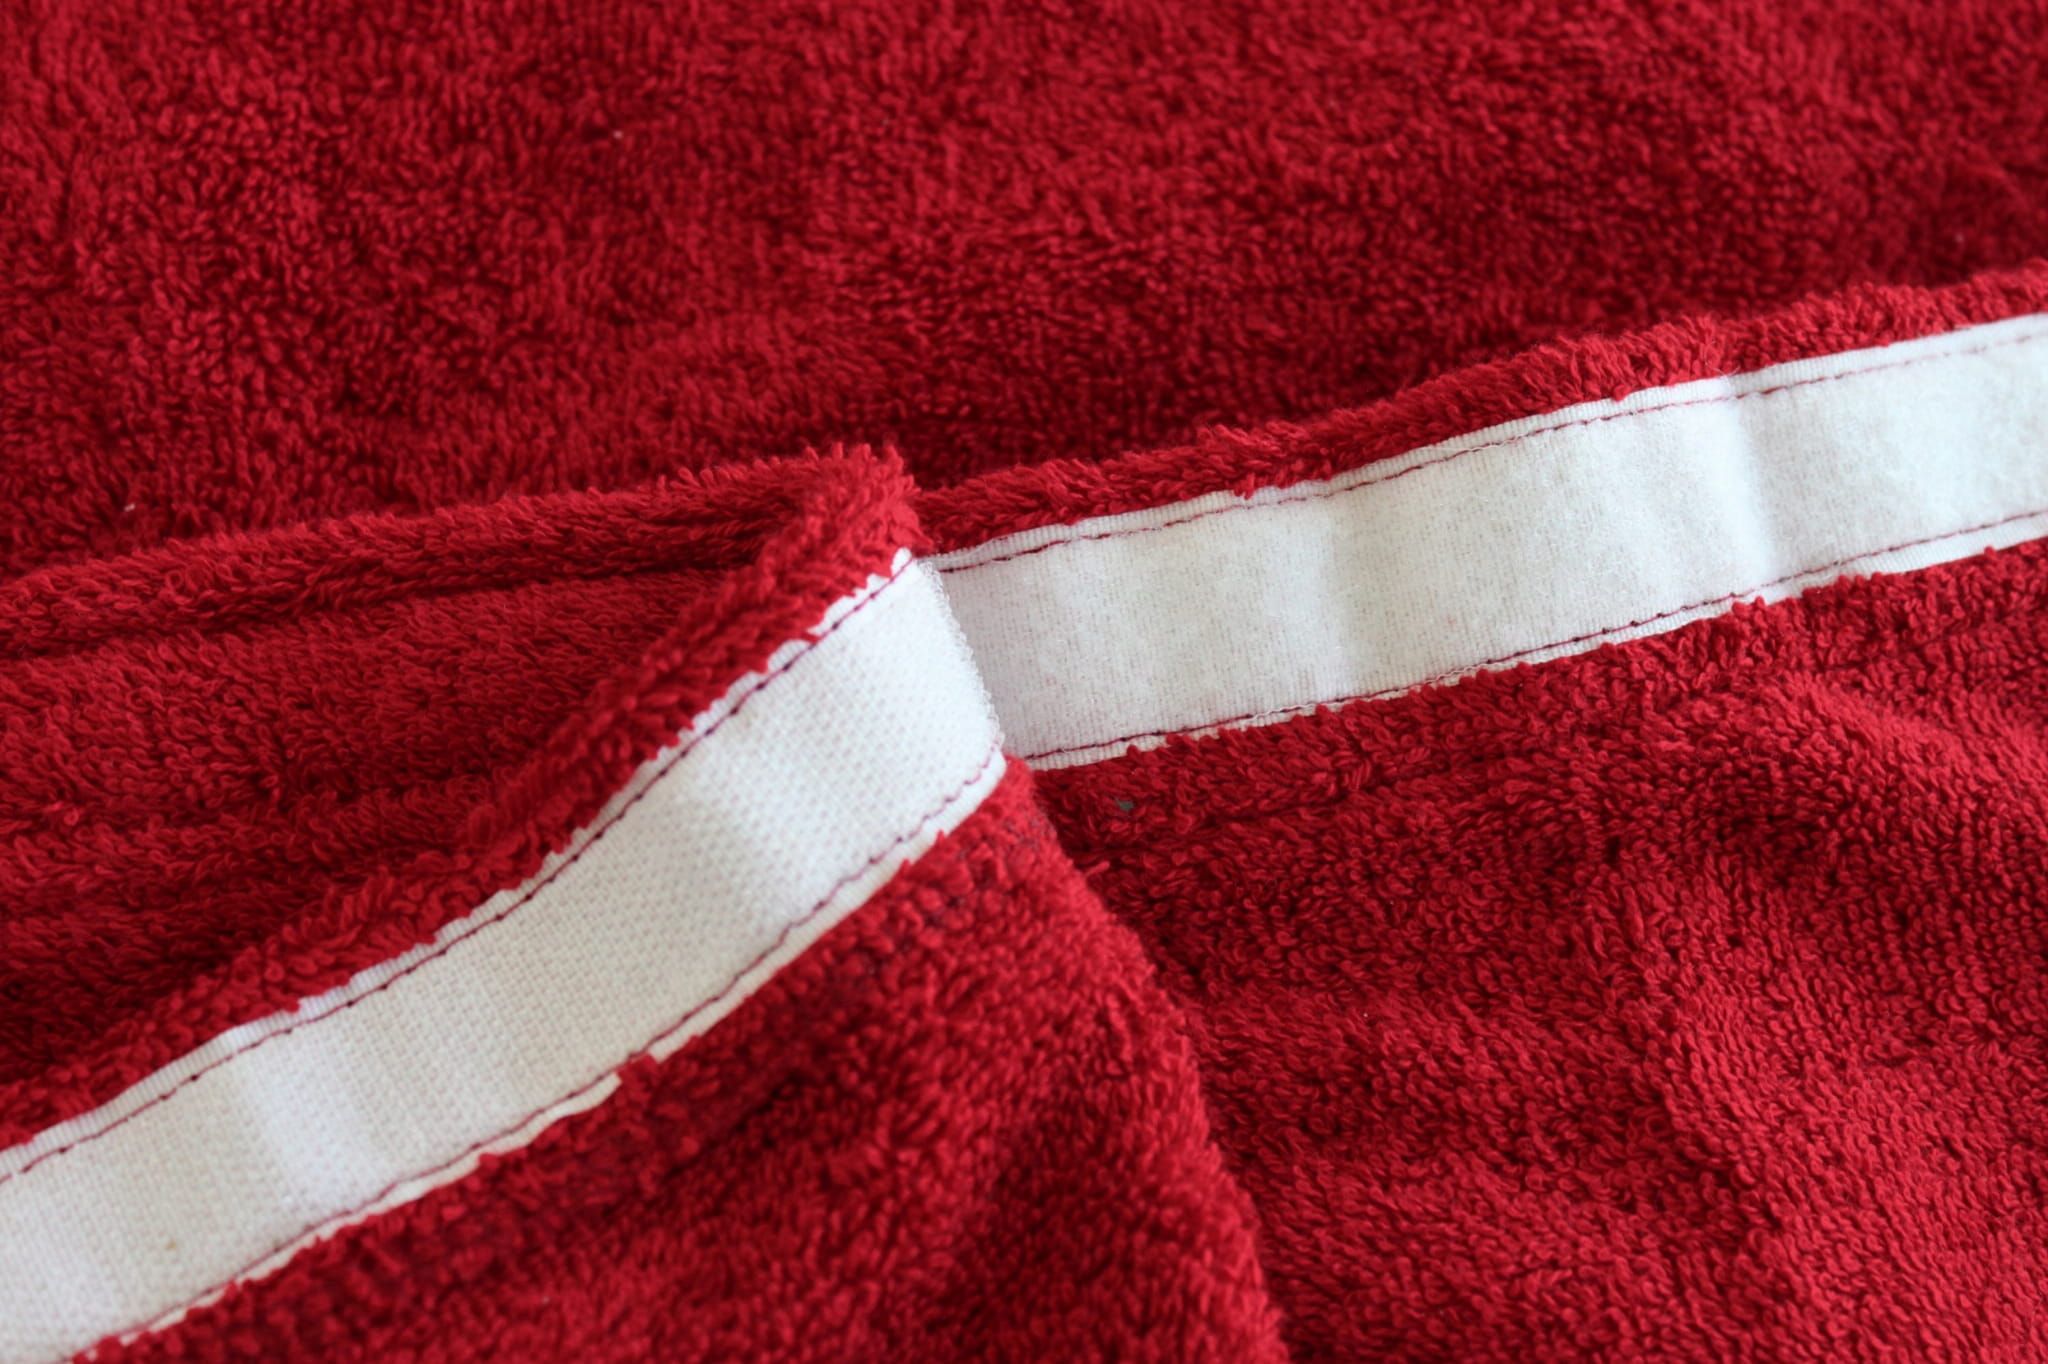 Kilt Ręcznik Kąpielowy Męski Do Sauny L/Xl Bawełna Frotte Spa Czerwony